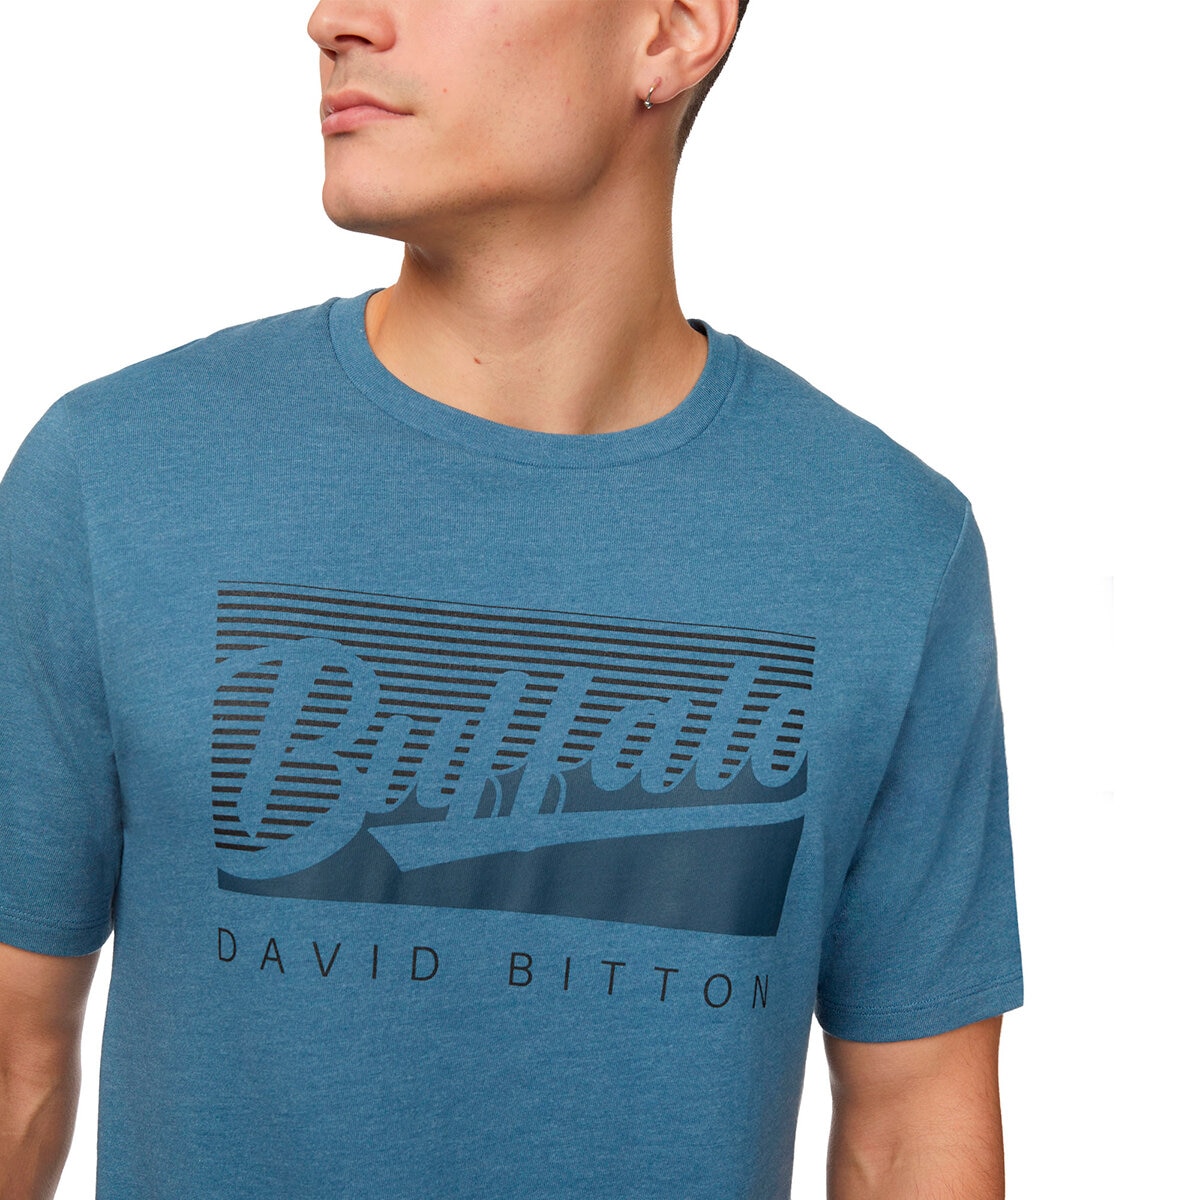 Buffalo David Bitton Playera para Caballero Azul